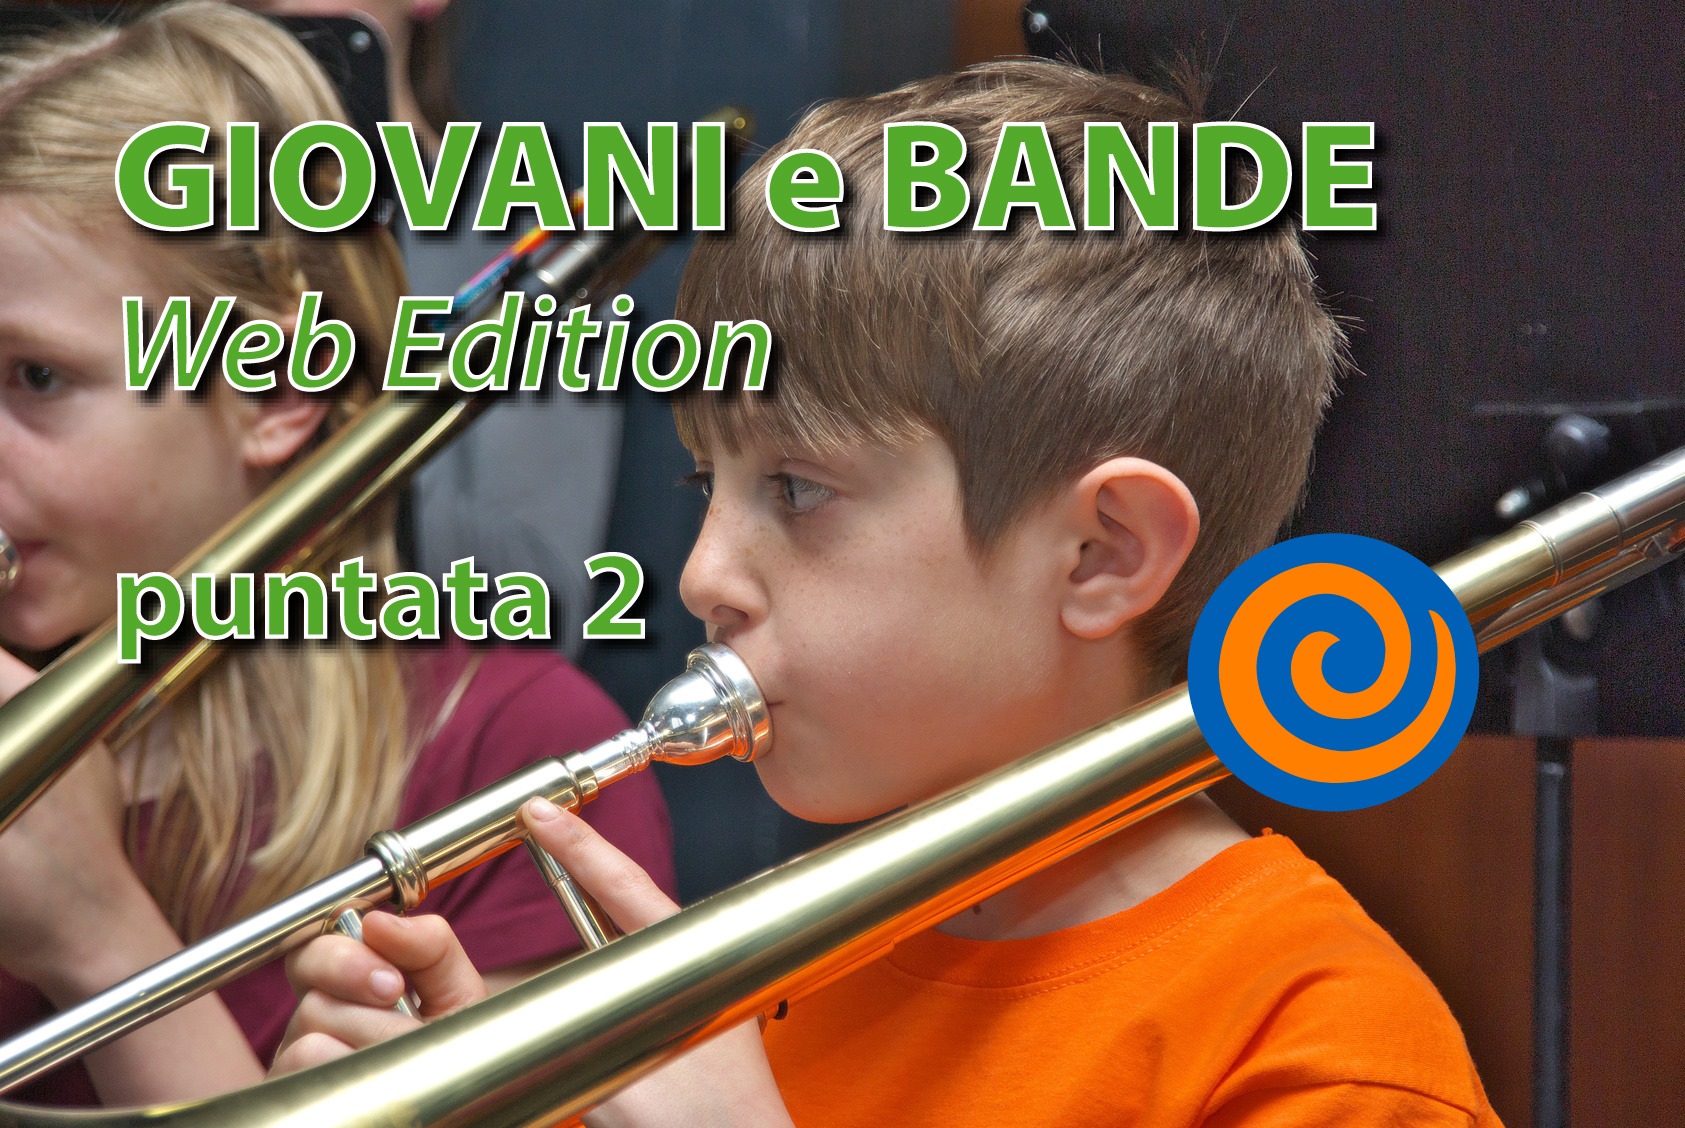 Giovani e Bande Web Edition, Puntata 2 - Organizzato da Scomegna Music